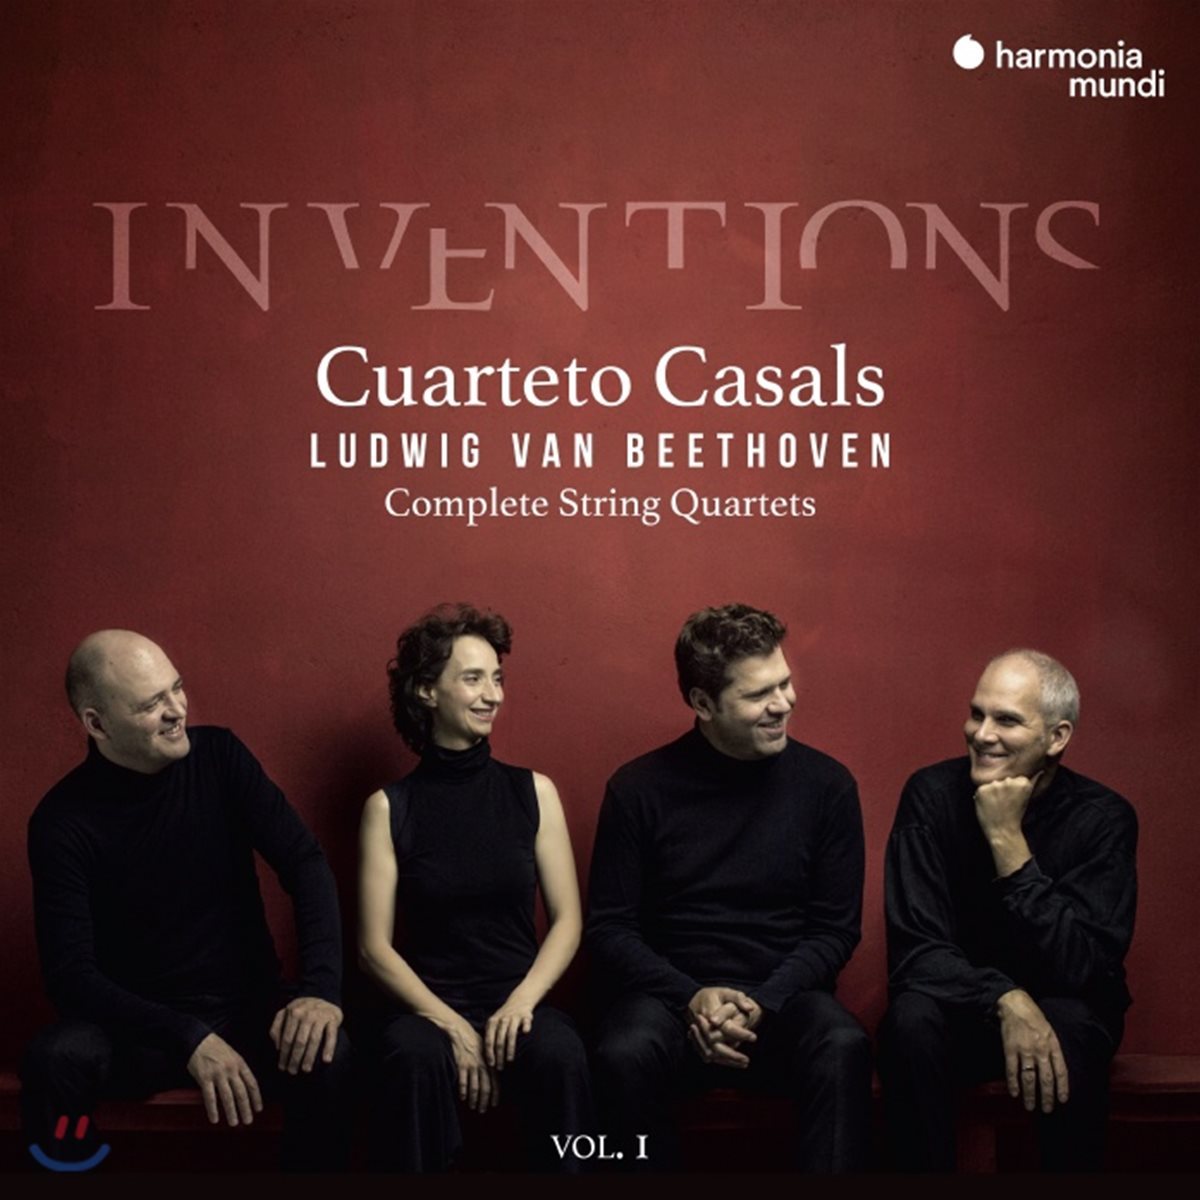 Cuarteto Casals 베토벤: 현악 사중주 전곡 1집 - 카잘스 사중주단 (Beethoven: Complete String Quartets Vol. 1)